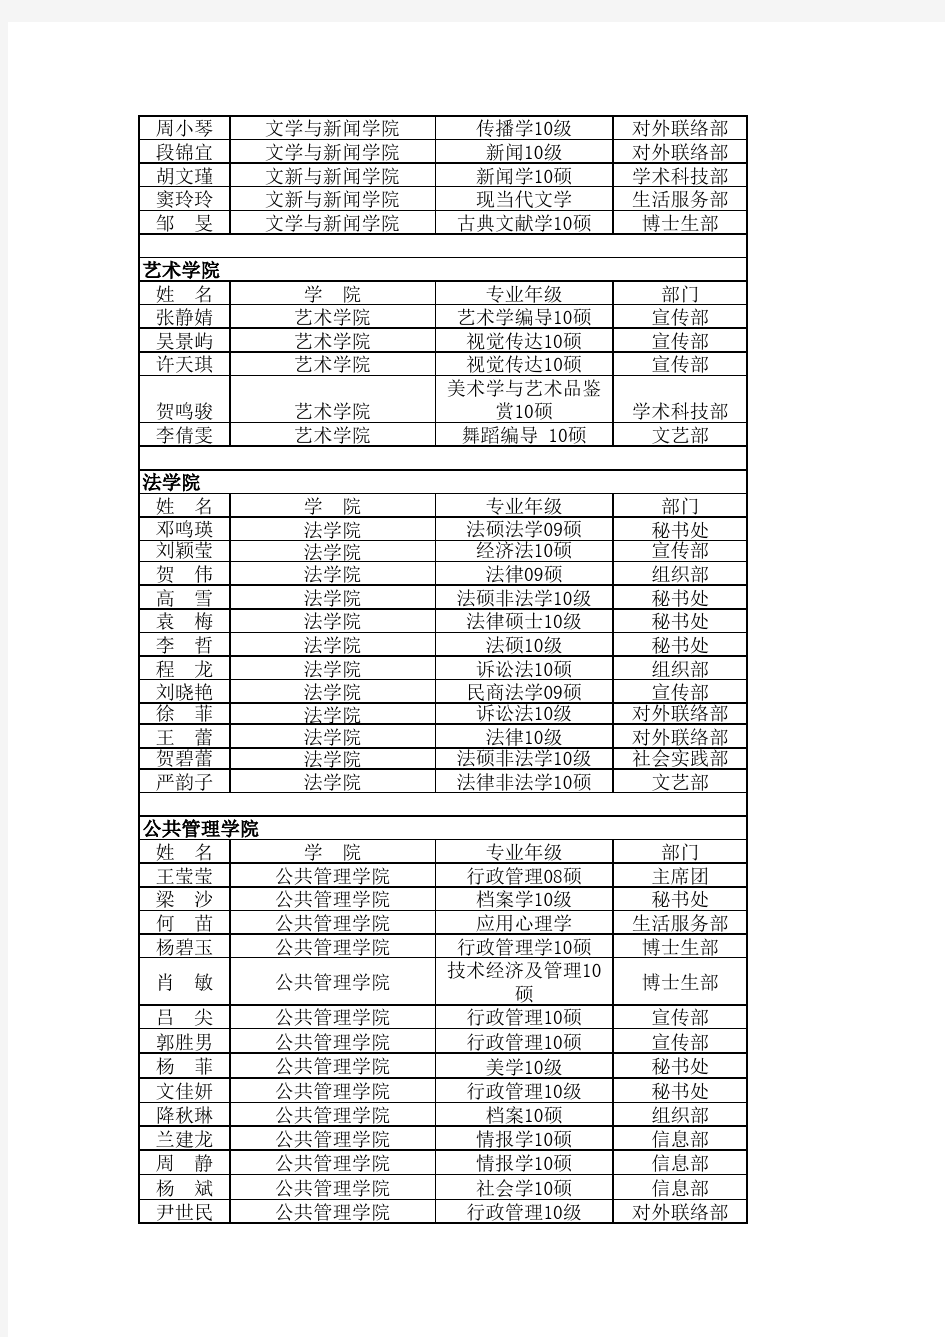 四川大学2010年-2011年研会成员学院名单